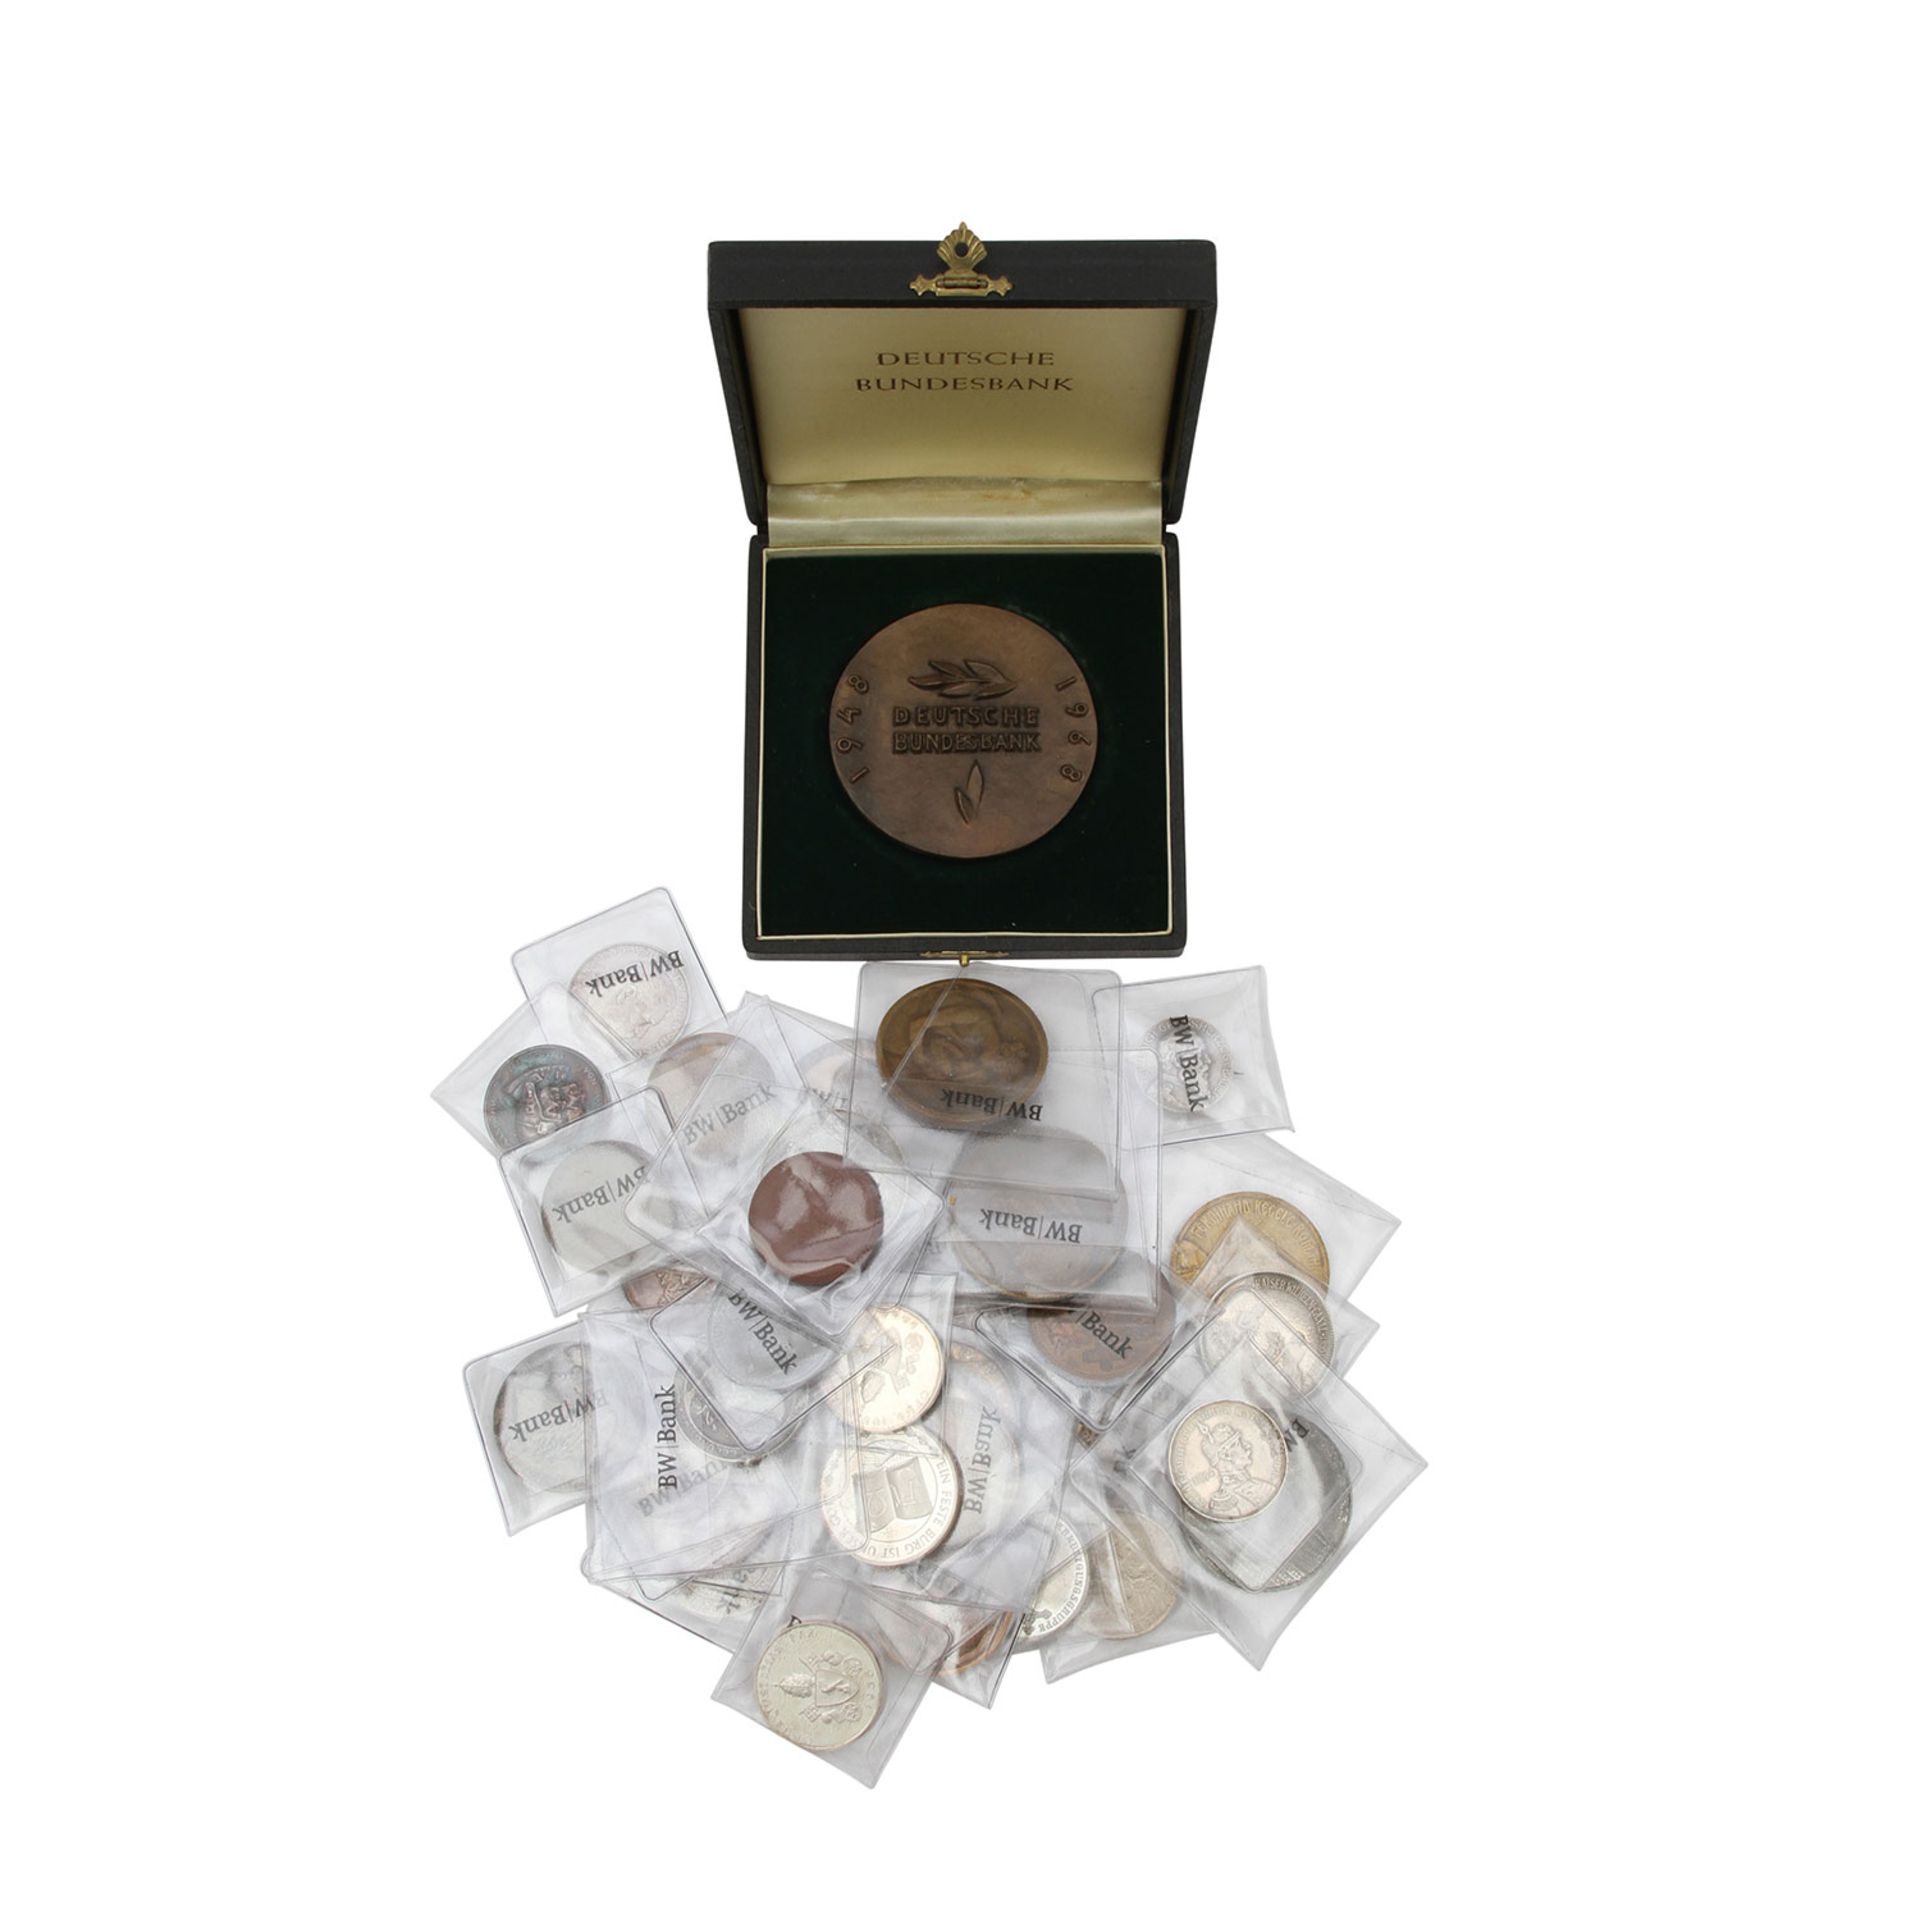 Historische Medaillen - Konvolut 29 Stück, bestehend u.a. aus Brandenburg-Preußen Silbermedaille